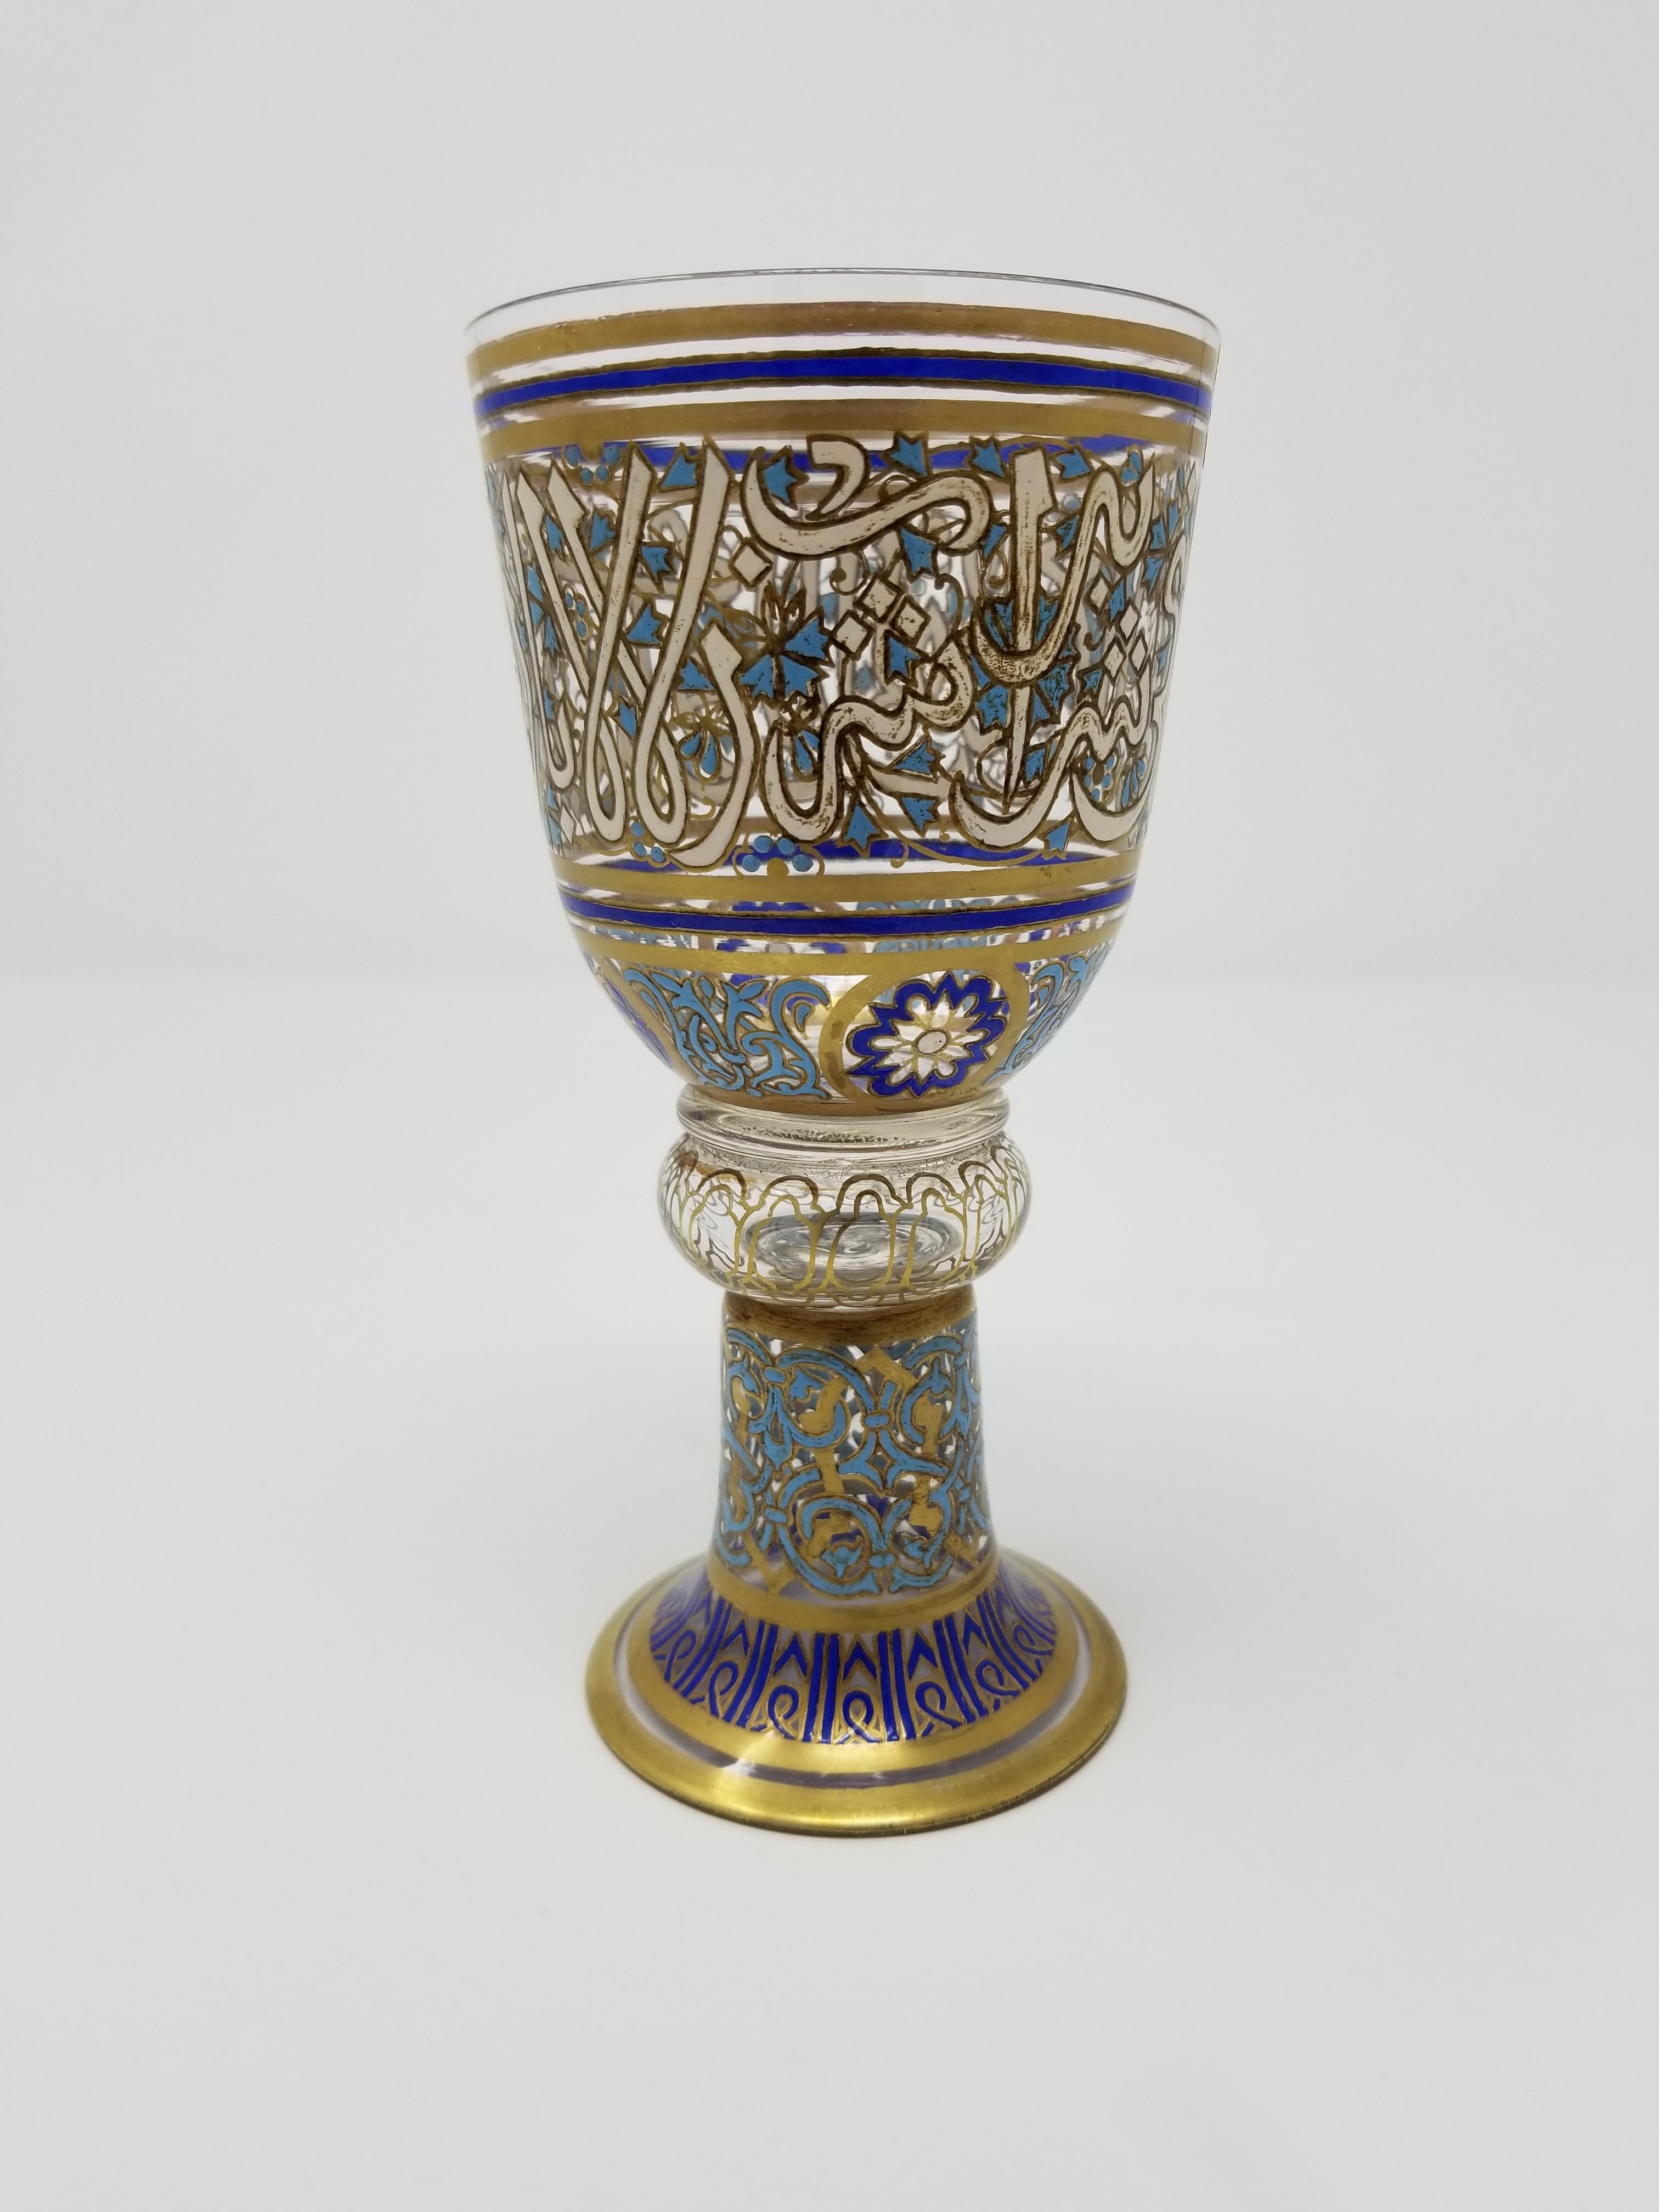 Magnifique gobelet antique en verre doré et émaillé de Lobmeyr, avec un décor de calligraphie islamique, signé sur le fond par Lobmeyr. Probablement commandée pour le marché des ottomans. Ce gobelet est magnifiquement émaillé de bleu cobalt, de bleu